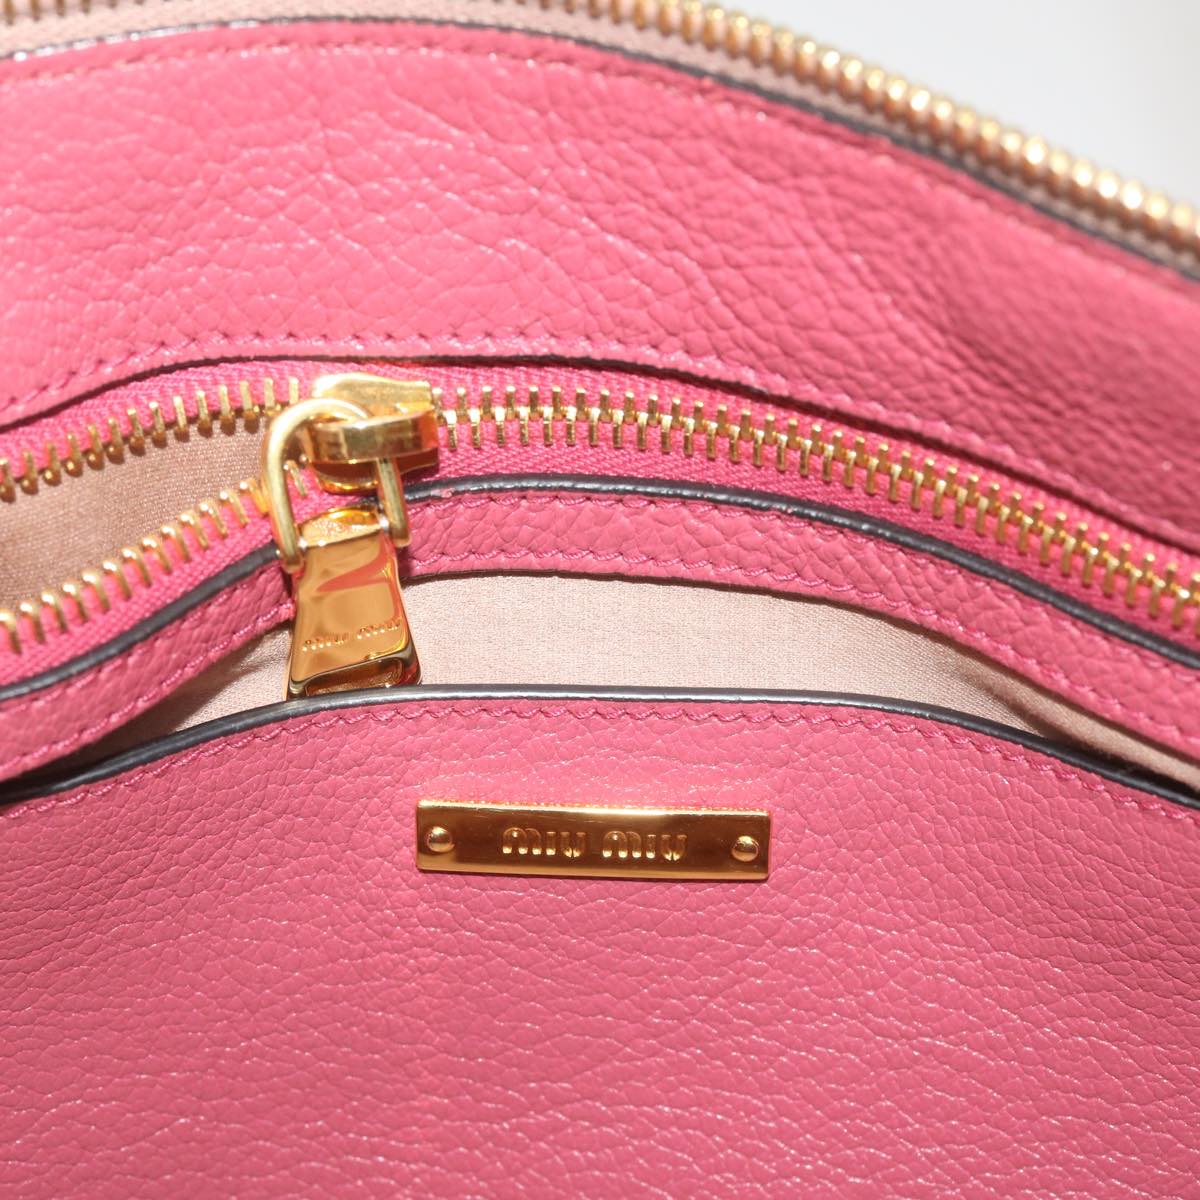 Miu Miu Hand Bag Leather 2way Pink Auth ep3612